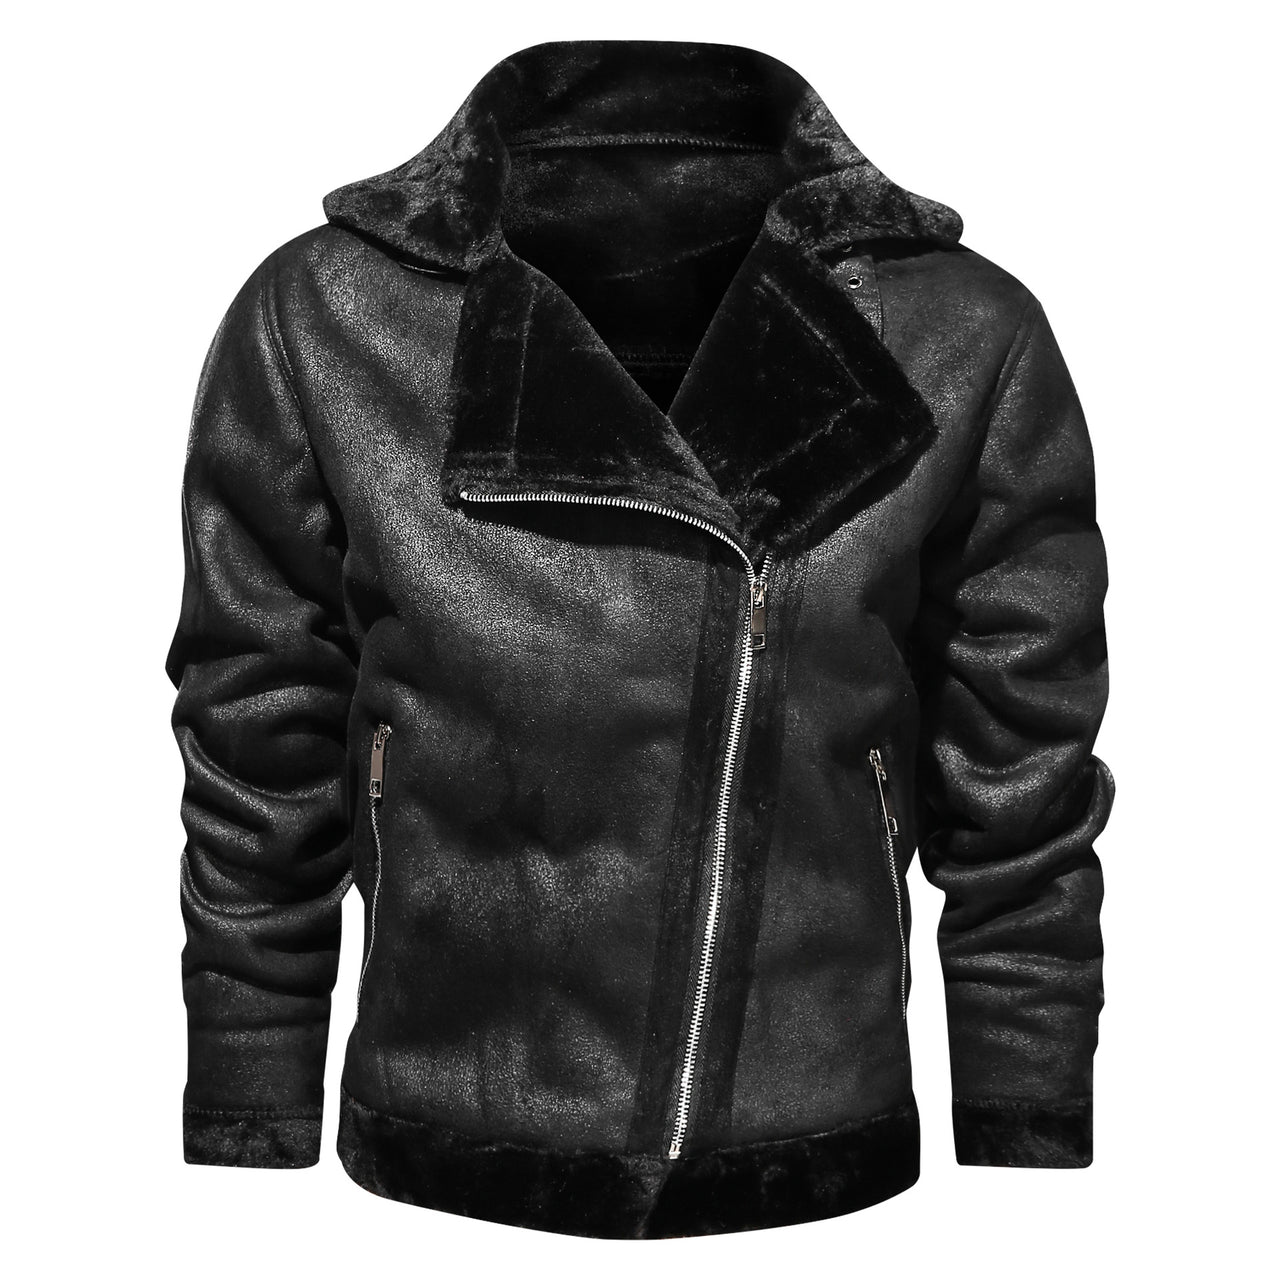 Leather Stylish Cool Pilot Jackets (3)